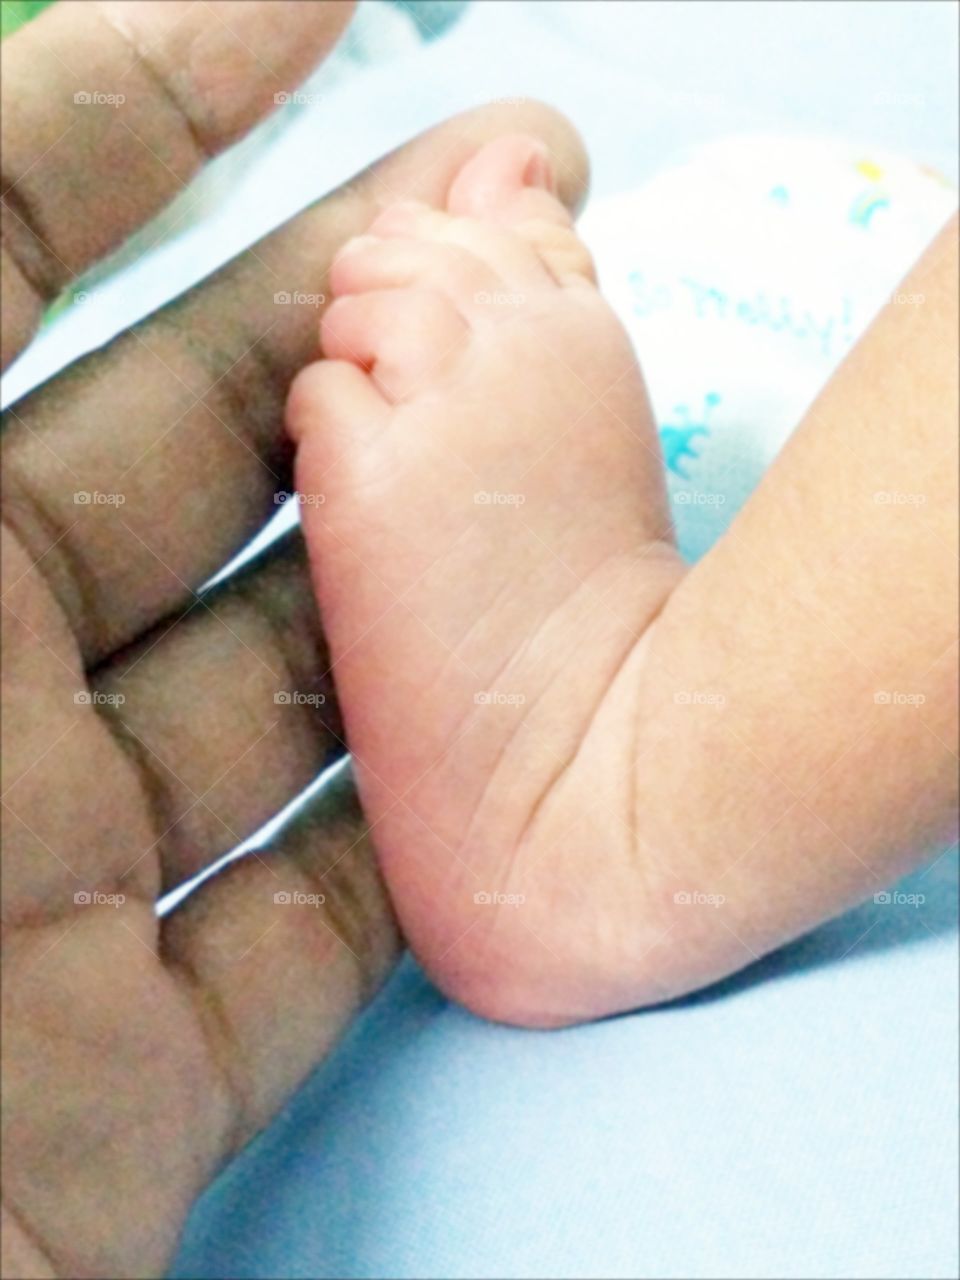 Foot in hand. Foot of newborn baby in mom"s hand